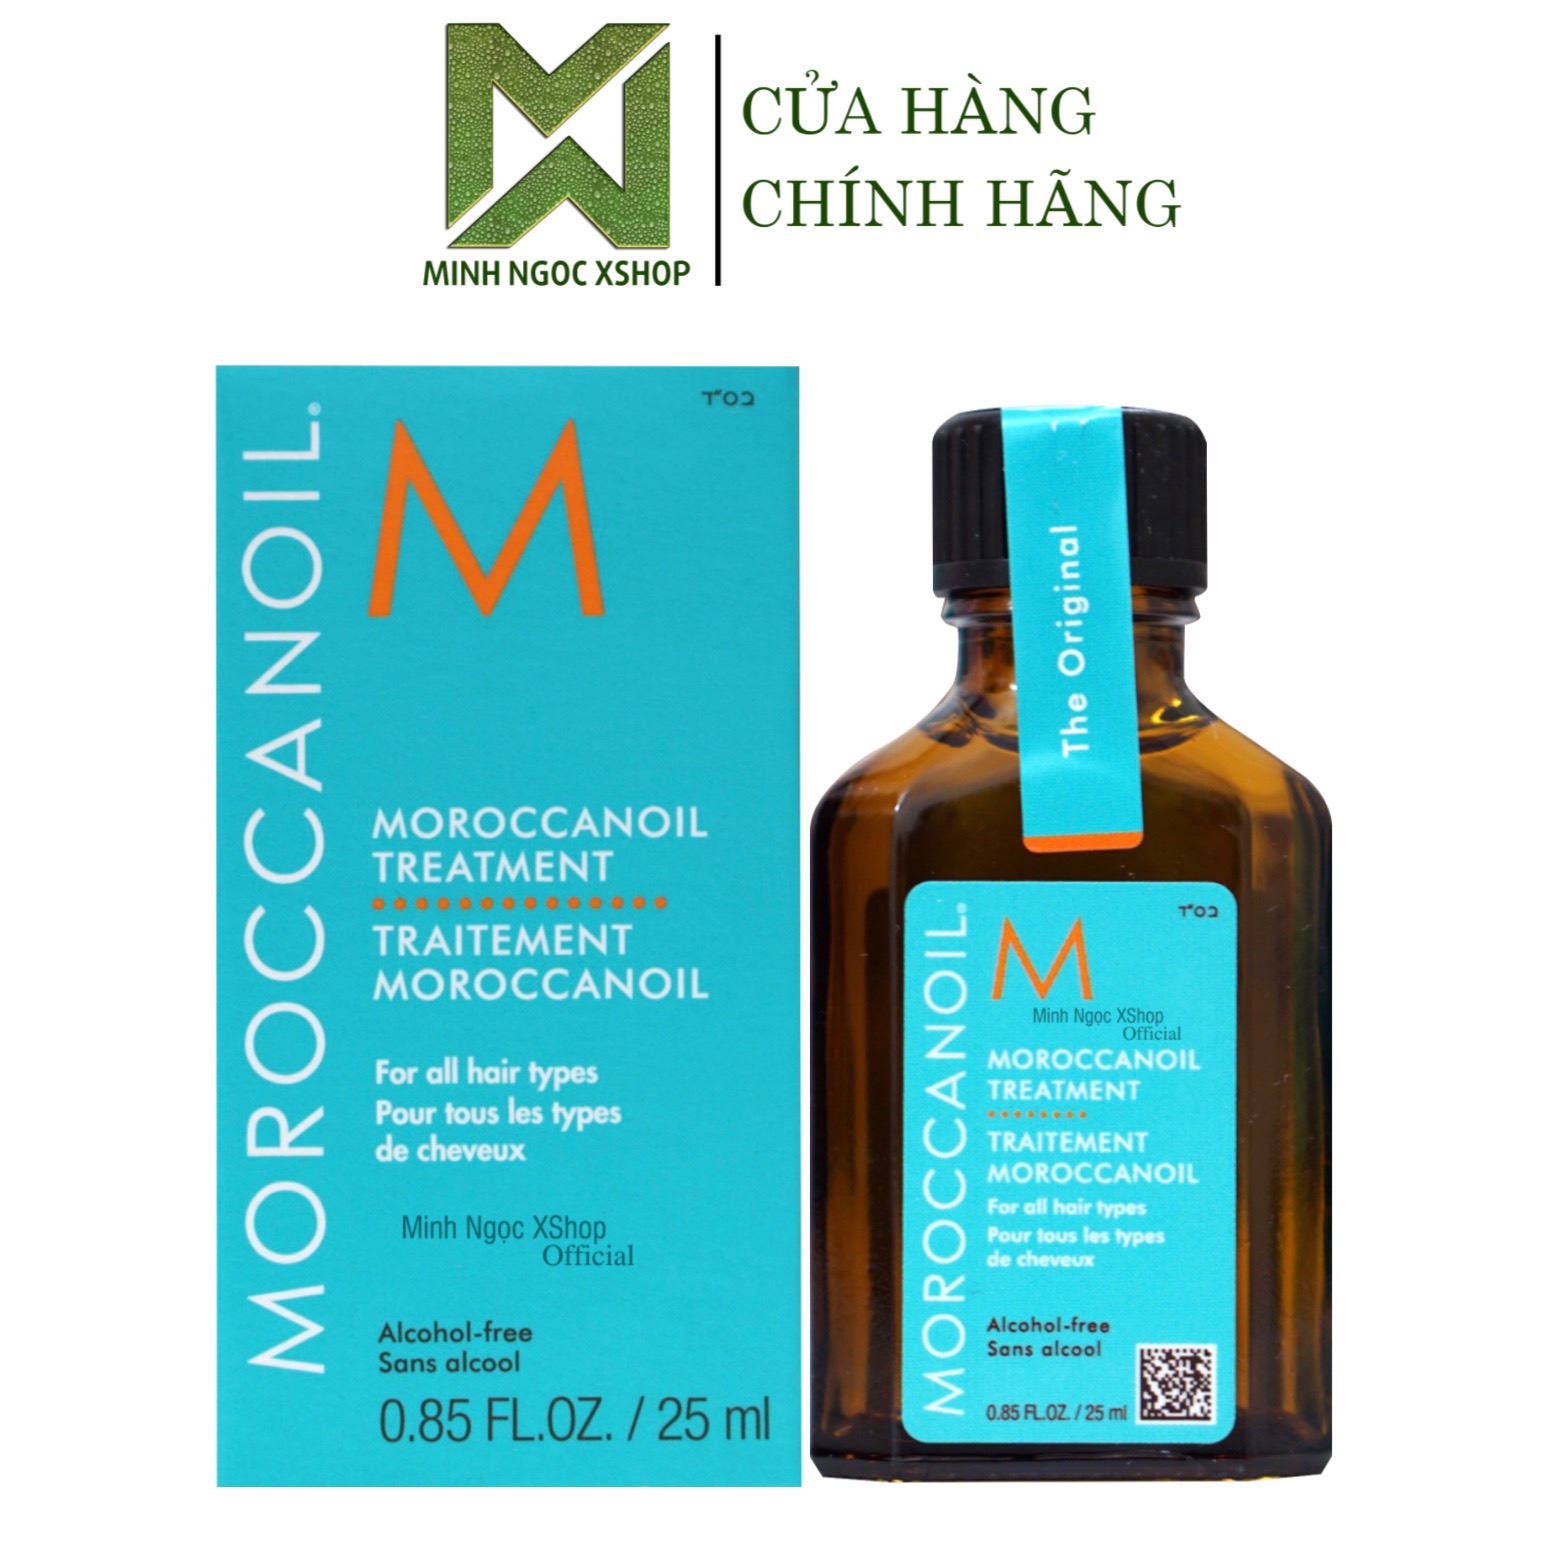 Tinh dầu dưỡng tóc Moroccanoil Treatment Original 10ML - 15ML - 25ML - 100ML - 125ML - 200ML chính hãng